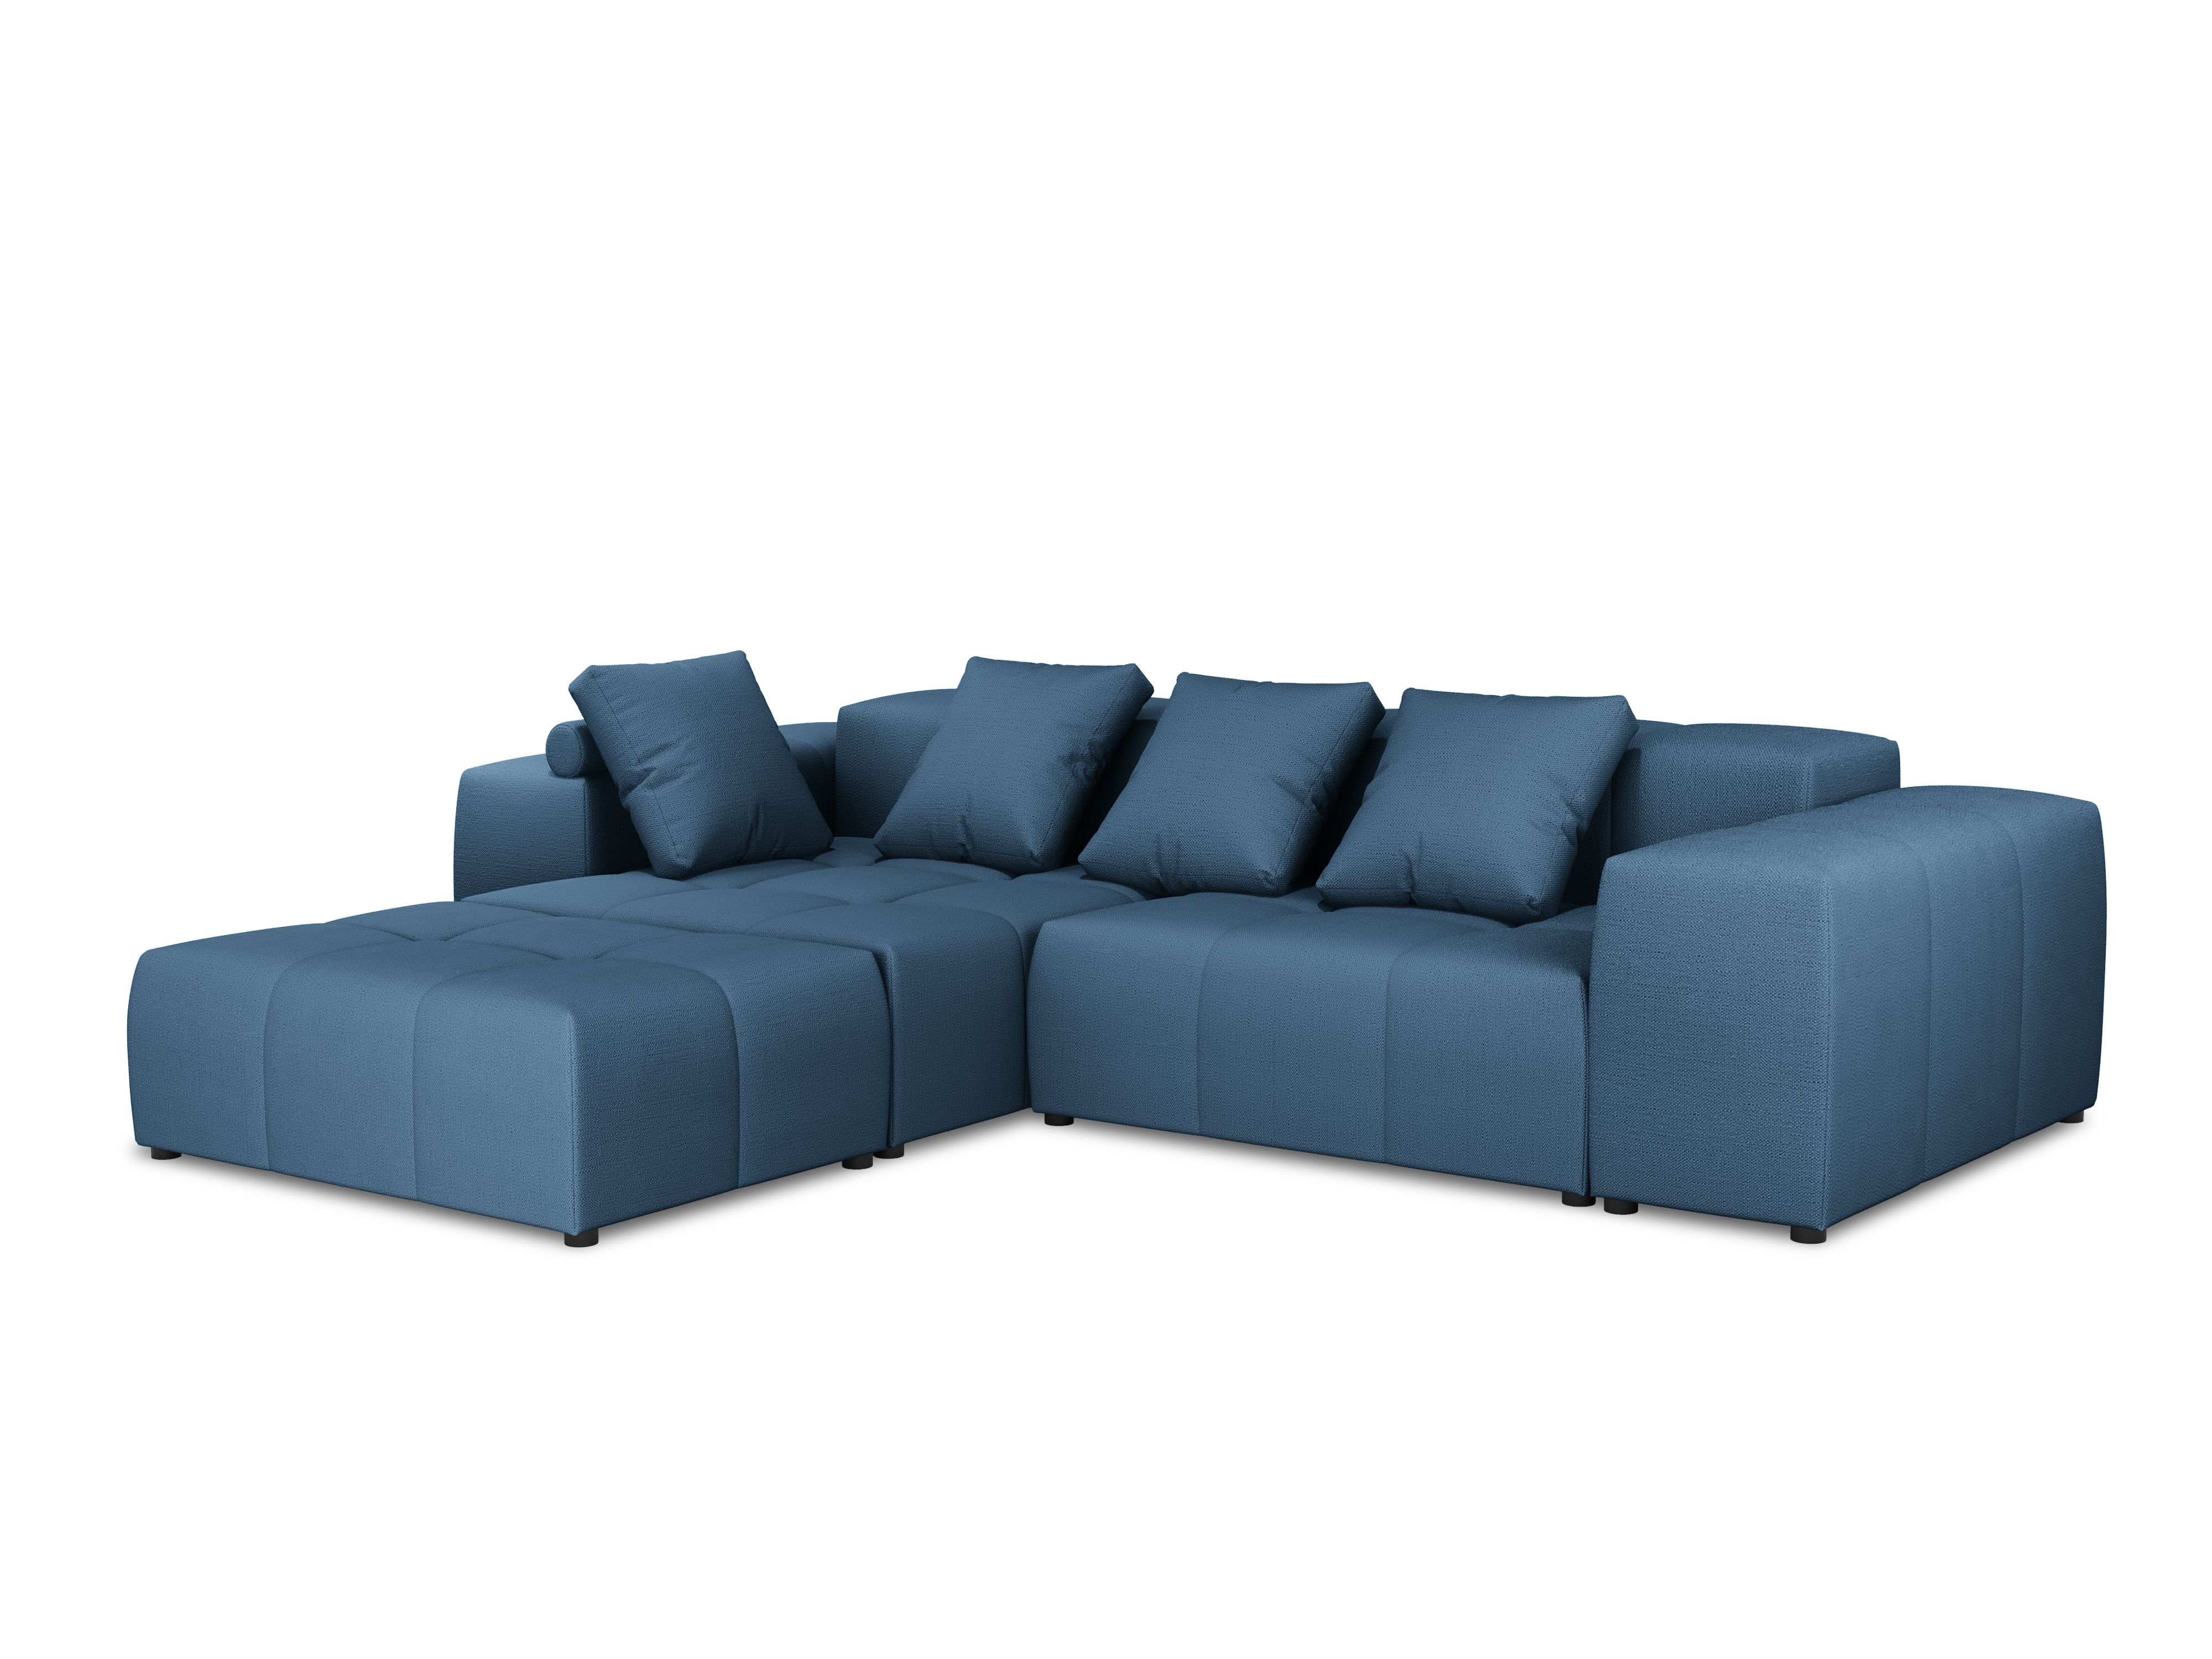 Canapé d'angle tissu structuré bleu foncé 5 places réversible